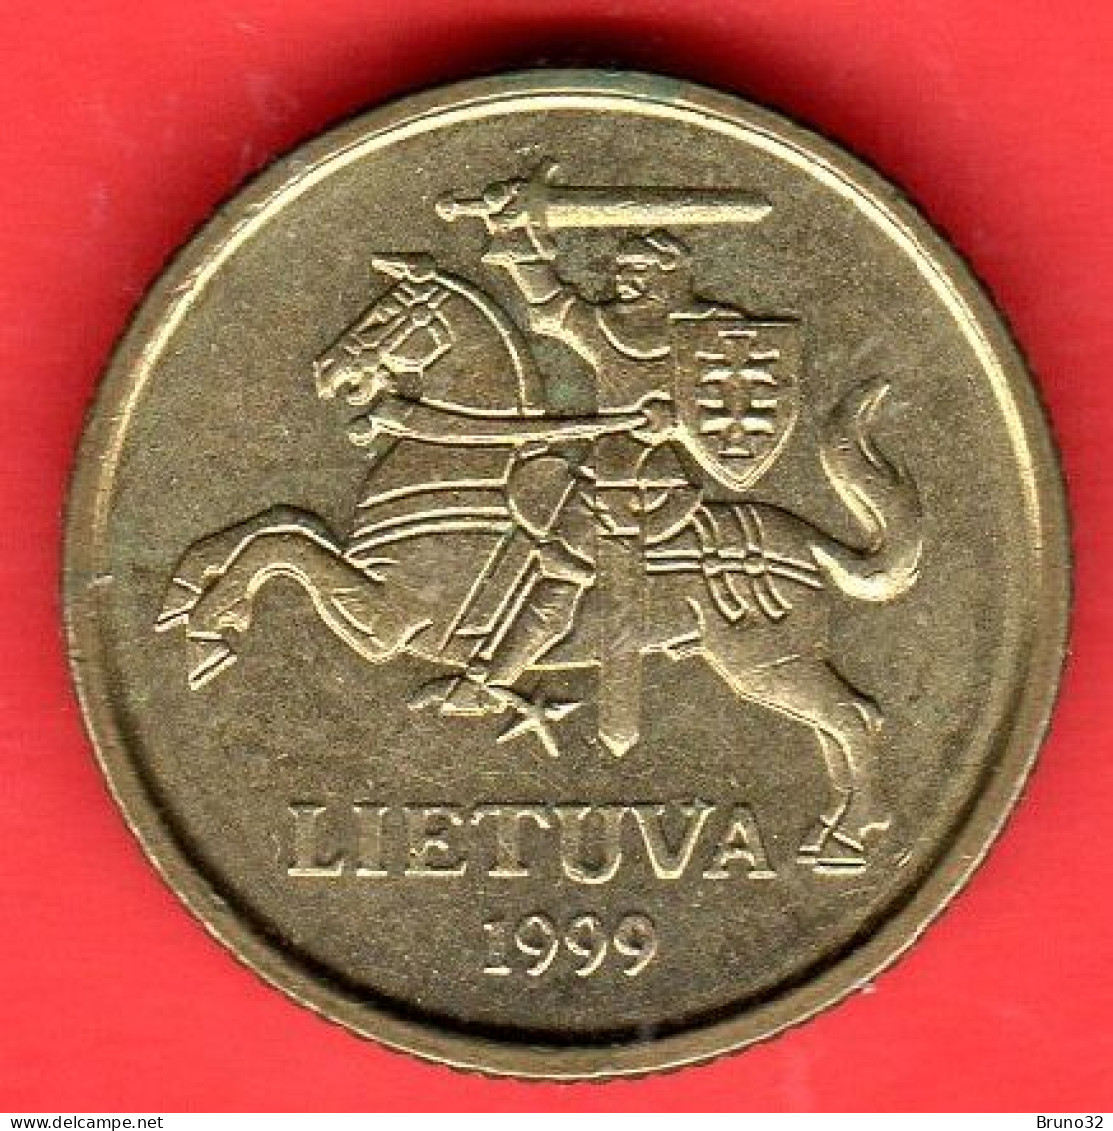 Lituania - Lietuva - Lithuania - 1999 - 10 Centu - QFDC/aUNC - Come Da Foto - Lithuania